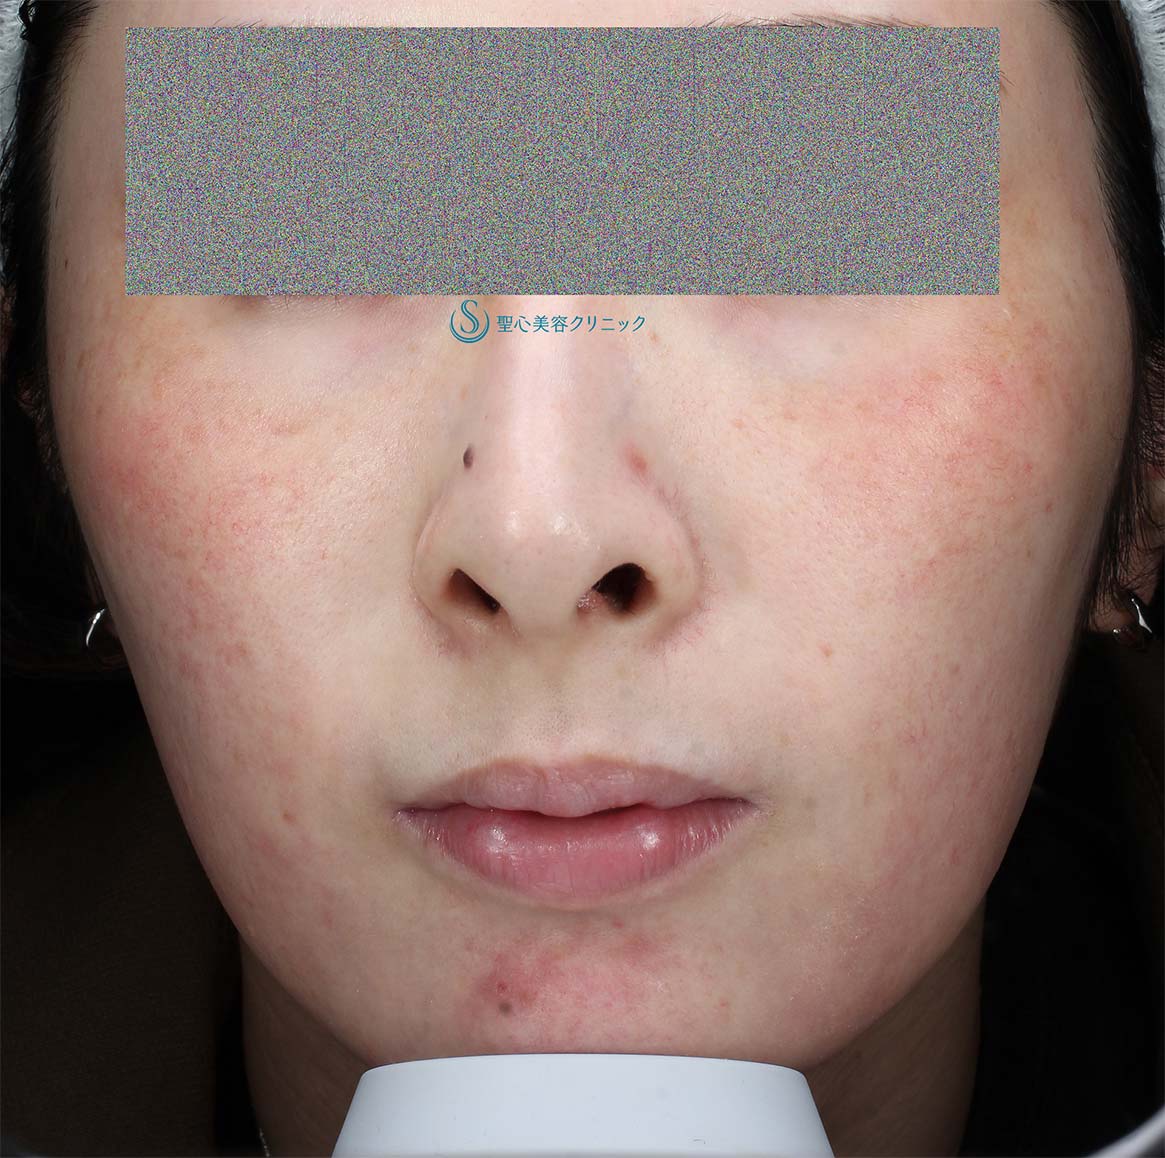 【20代女性・赤ら顔の治療】585 Quanta System Q1（3回照射後１か月） After 